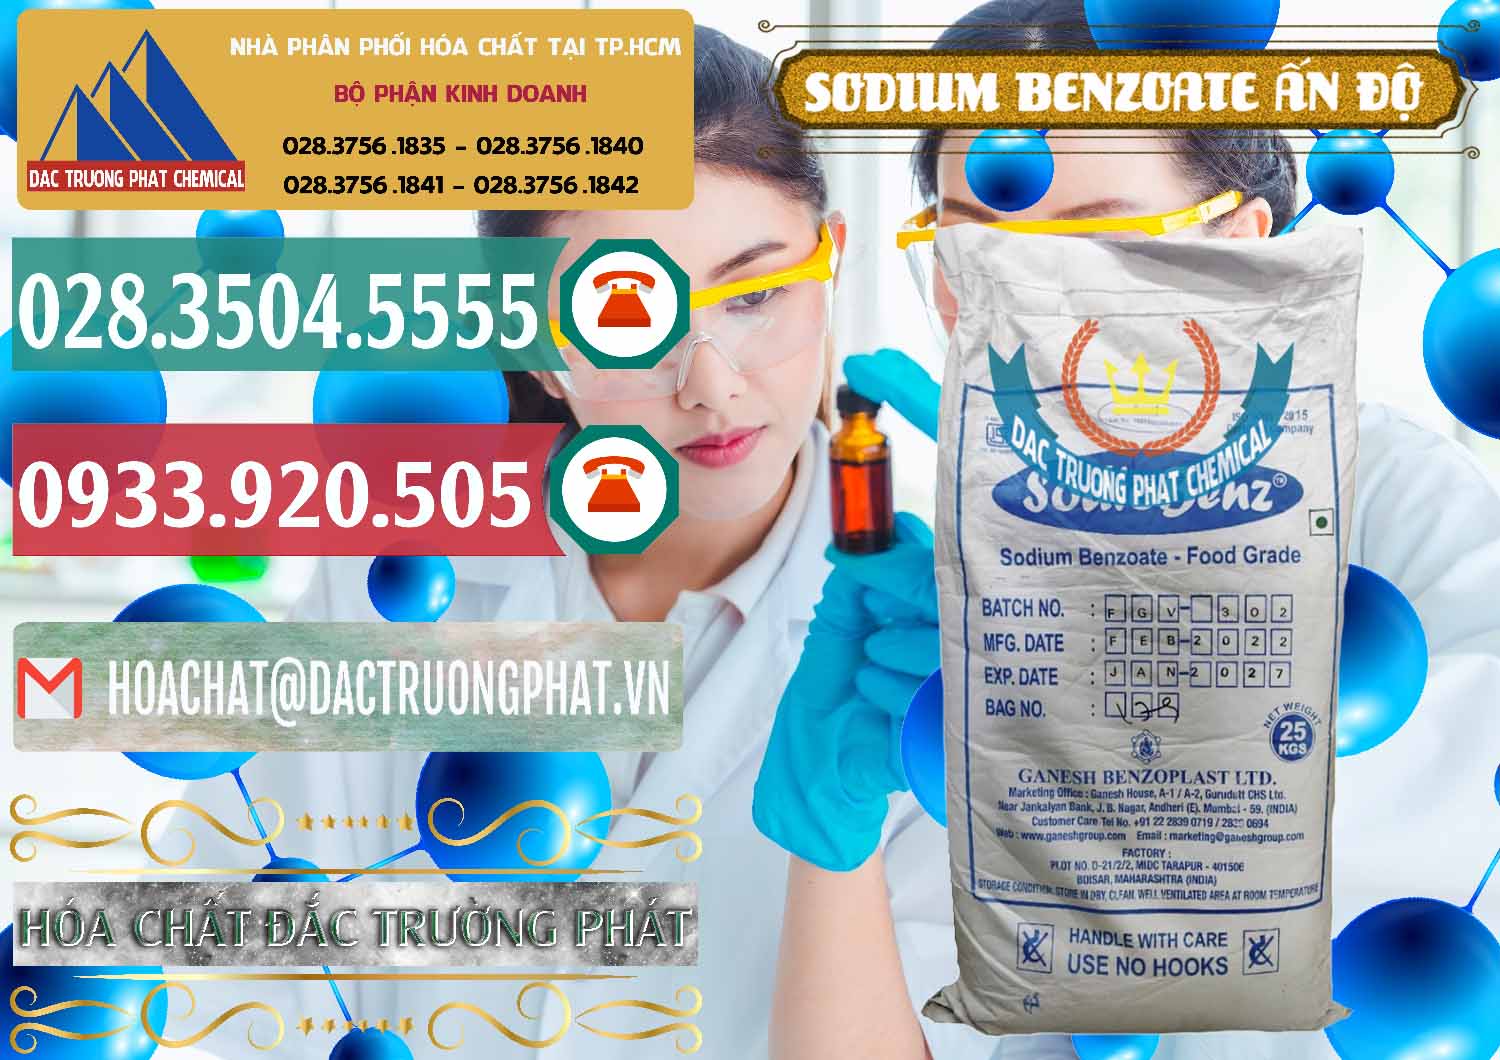 Nơi bán & phân phối Sodium Benzoate - Mốc Bột Ấn Độ India - 0361 - Cty chuyên cung cấp và kinh doanh hóa chất tại TP.HCM - muabanhoachat.vn